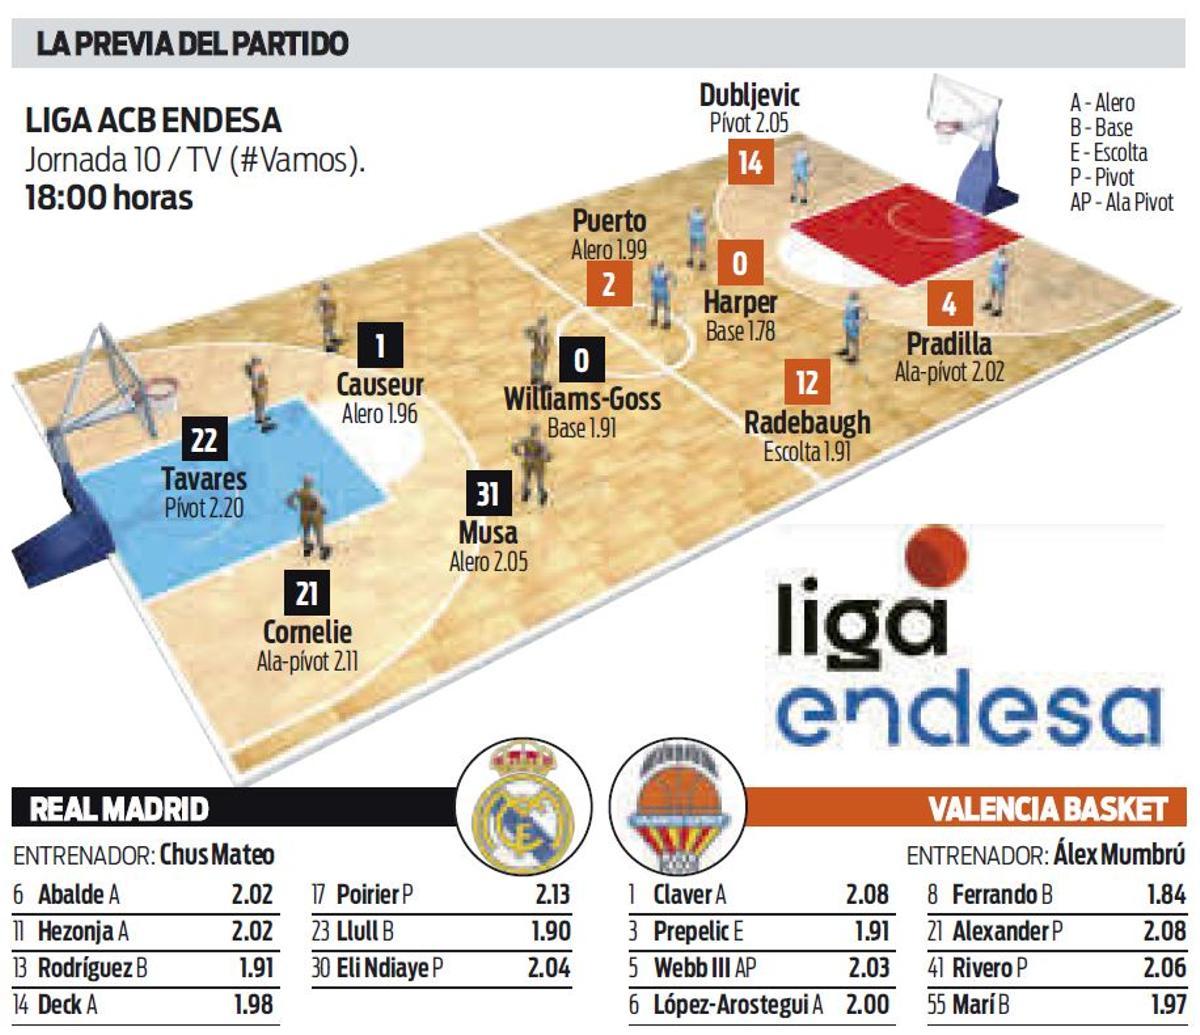 Los datos de la previa del Real Madrid - Valencia, jornada 10 de la liga acb Endesa